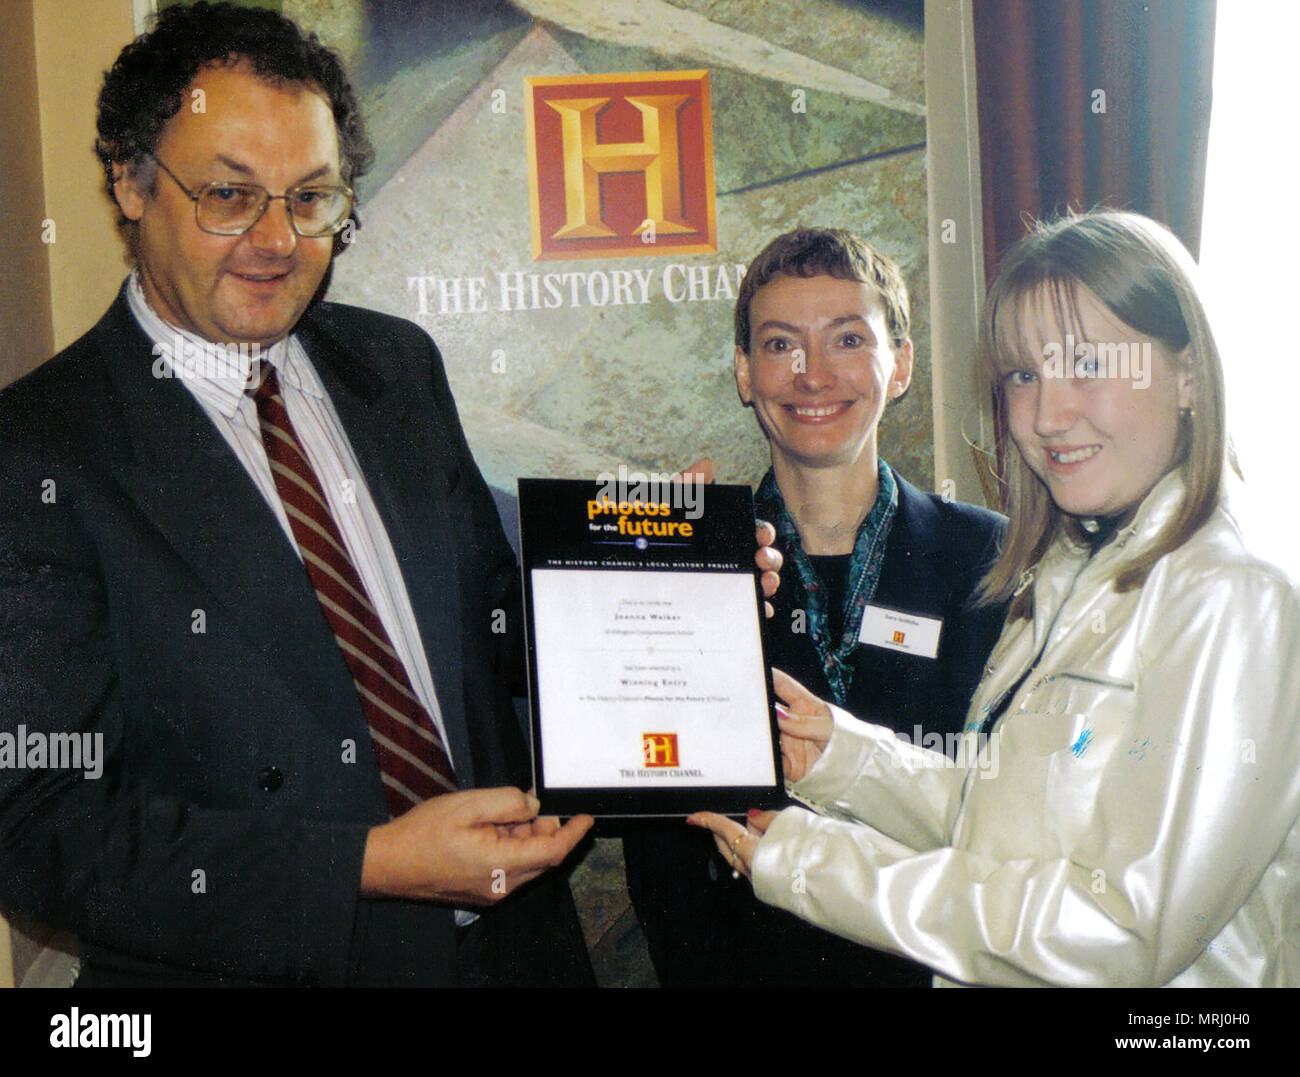 UK History Channel Fotografia premi regionali 2006 - vincitrice Miss J Walker di Whitby, Yorkshire è presentato con il suo certificato da Colin Acque, autore, scrittore e fotografo presso il Royal Hotel, Whitby Foto Stock